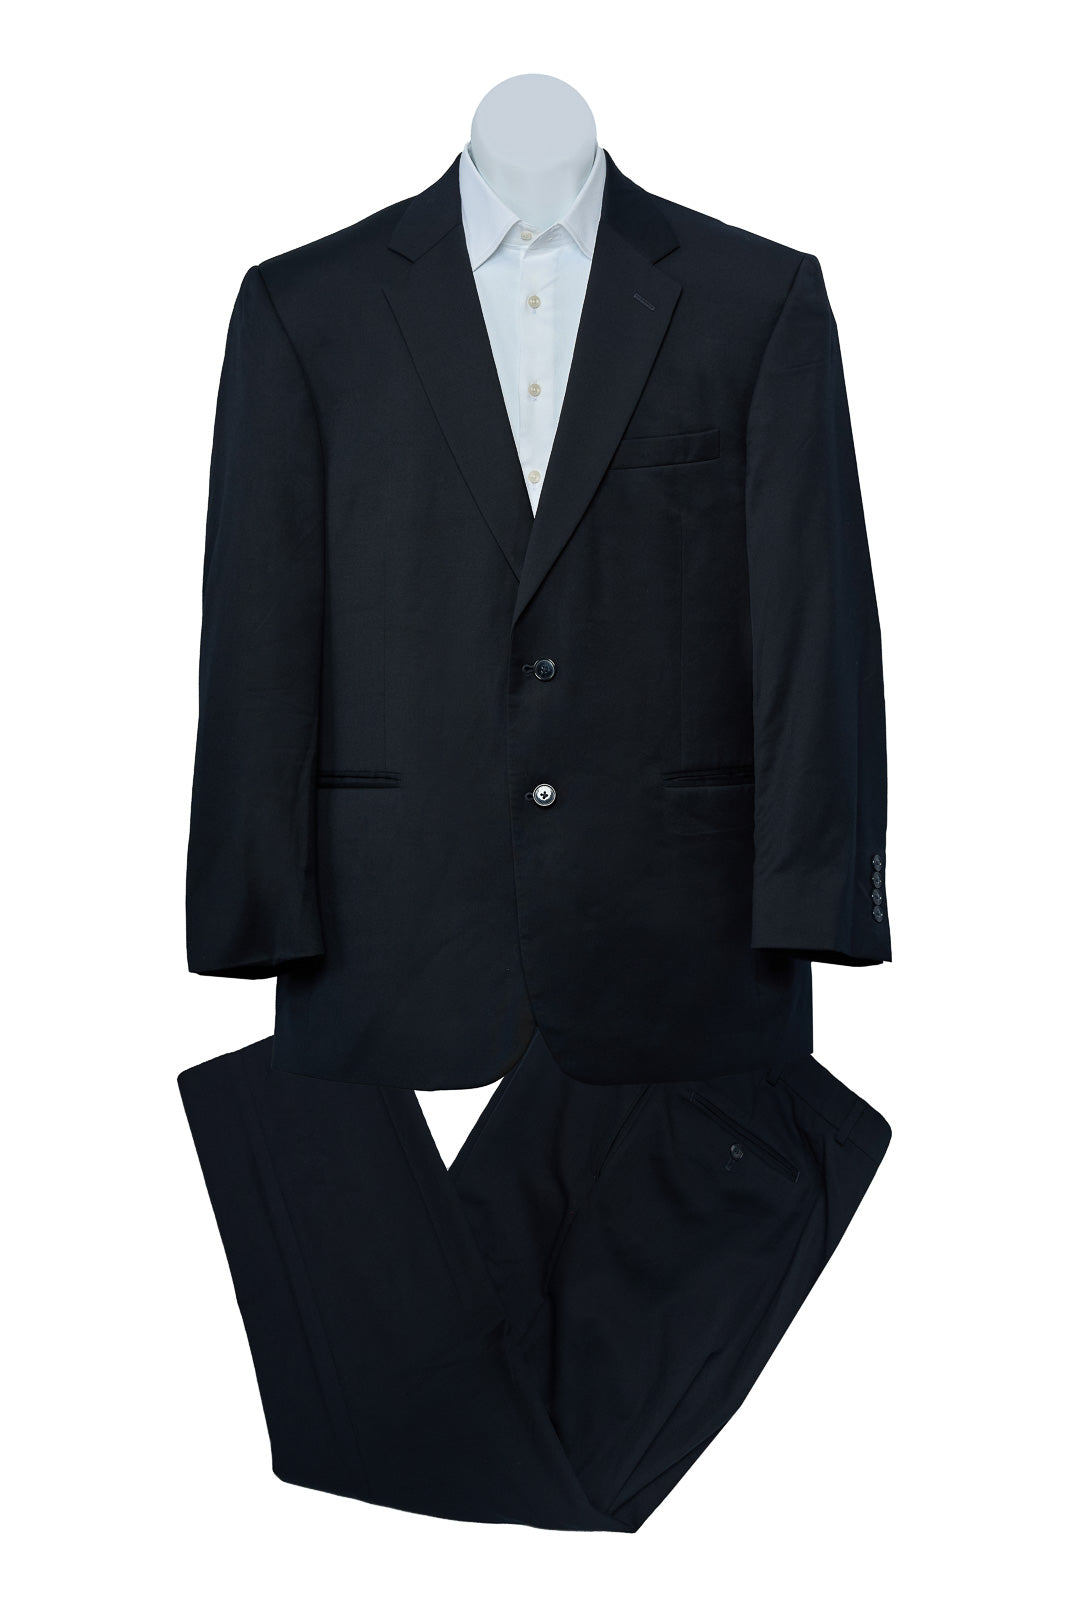 Plain Black Wool Suit